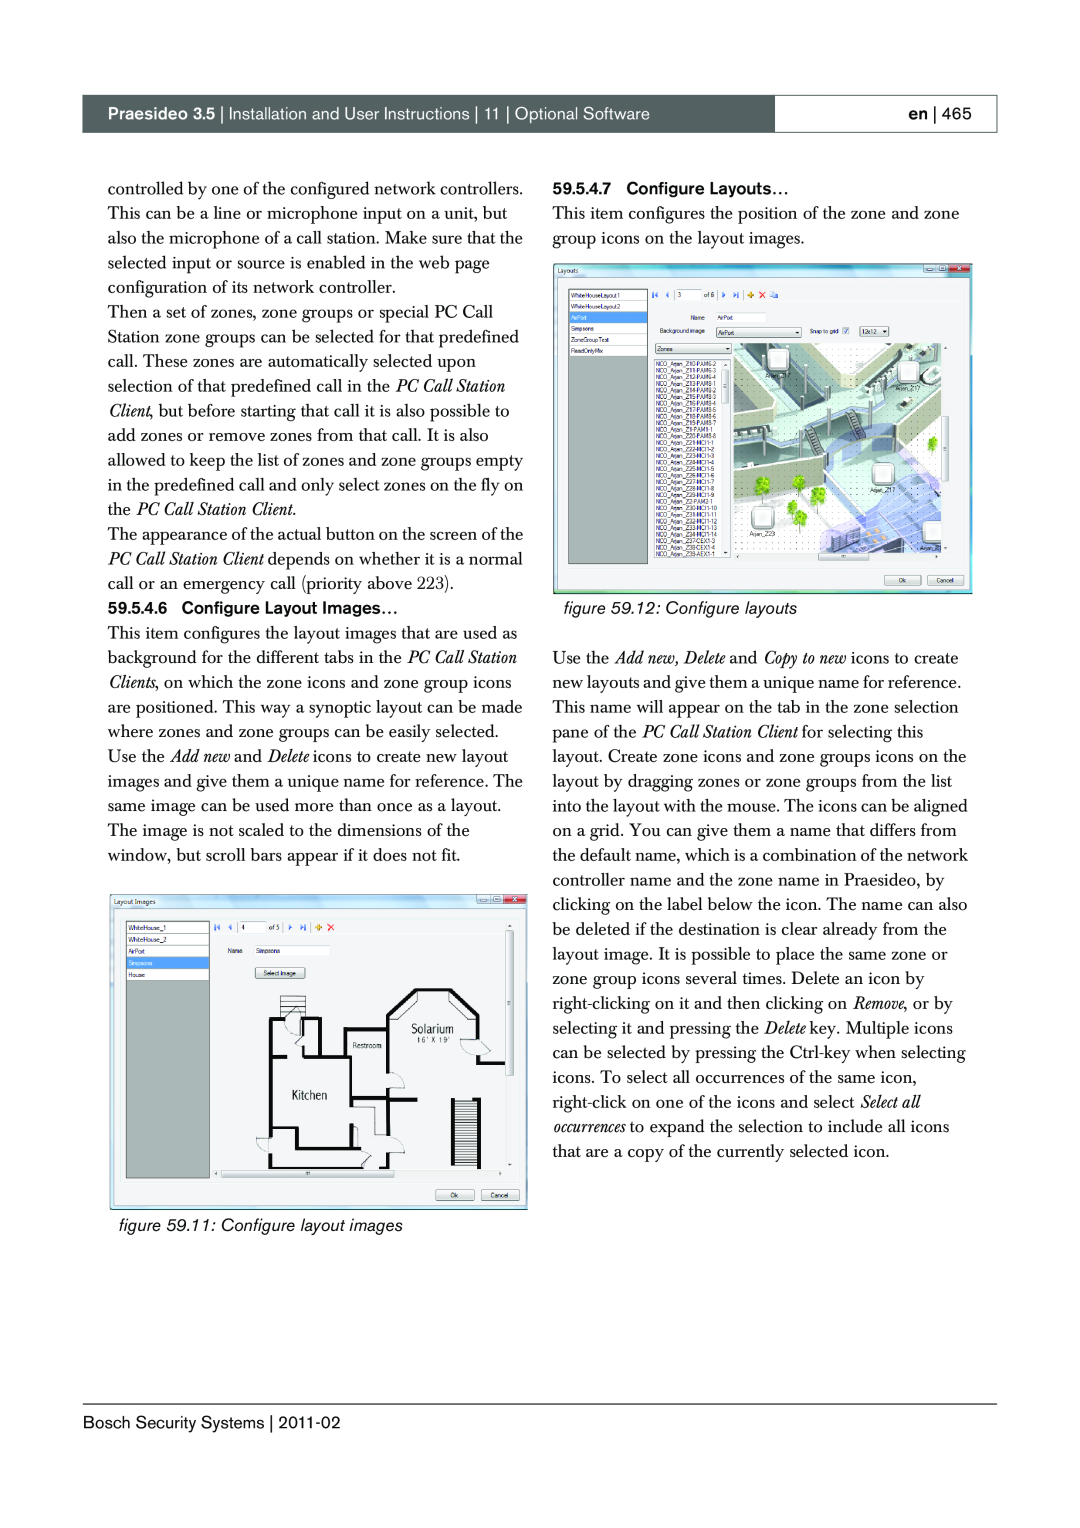 Bosch Appliances 3.5 11: Configure layout images, 12: Configure layouts, en, Configure Layout Images…, Configure Layouts… 